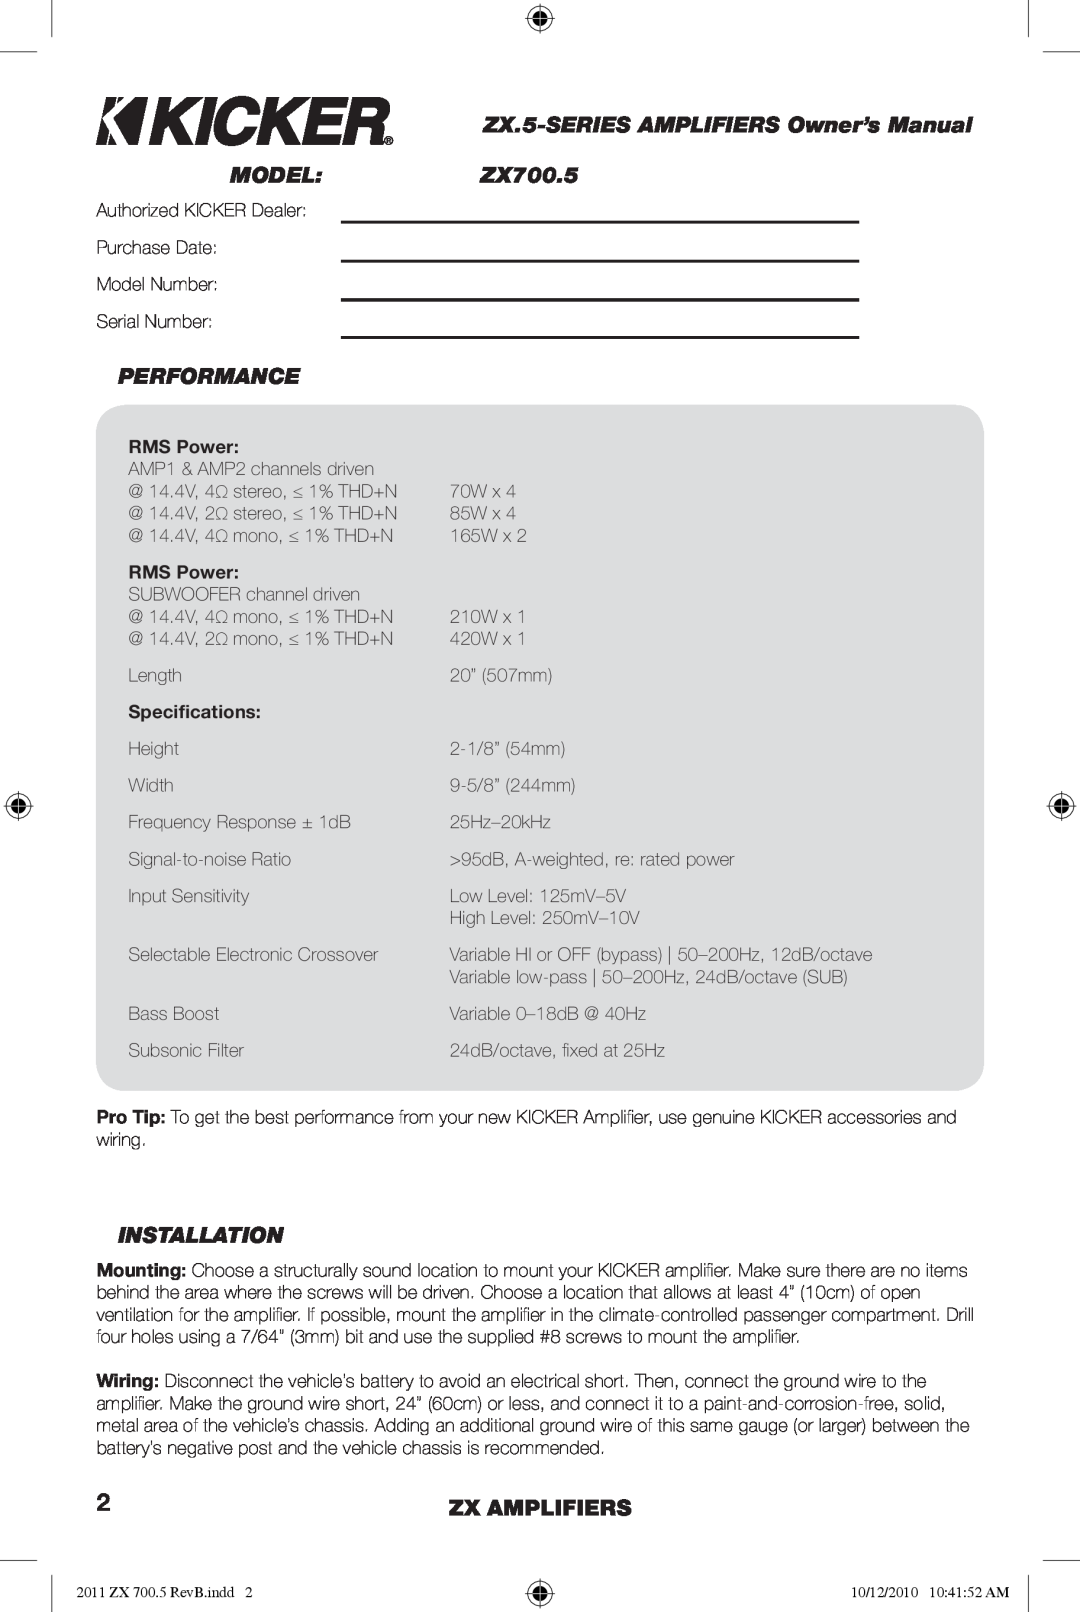 Kicker ZX700.5 manual Model, Performance, Installation, Zx Amplifiers 